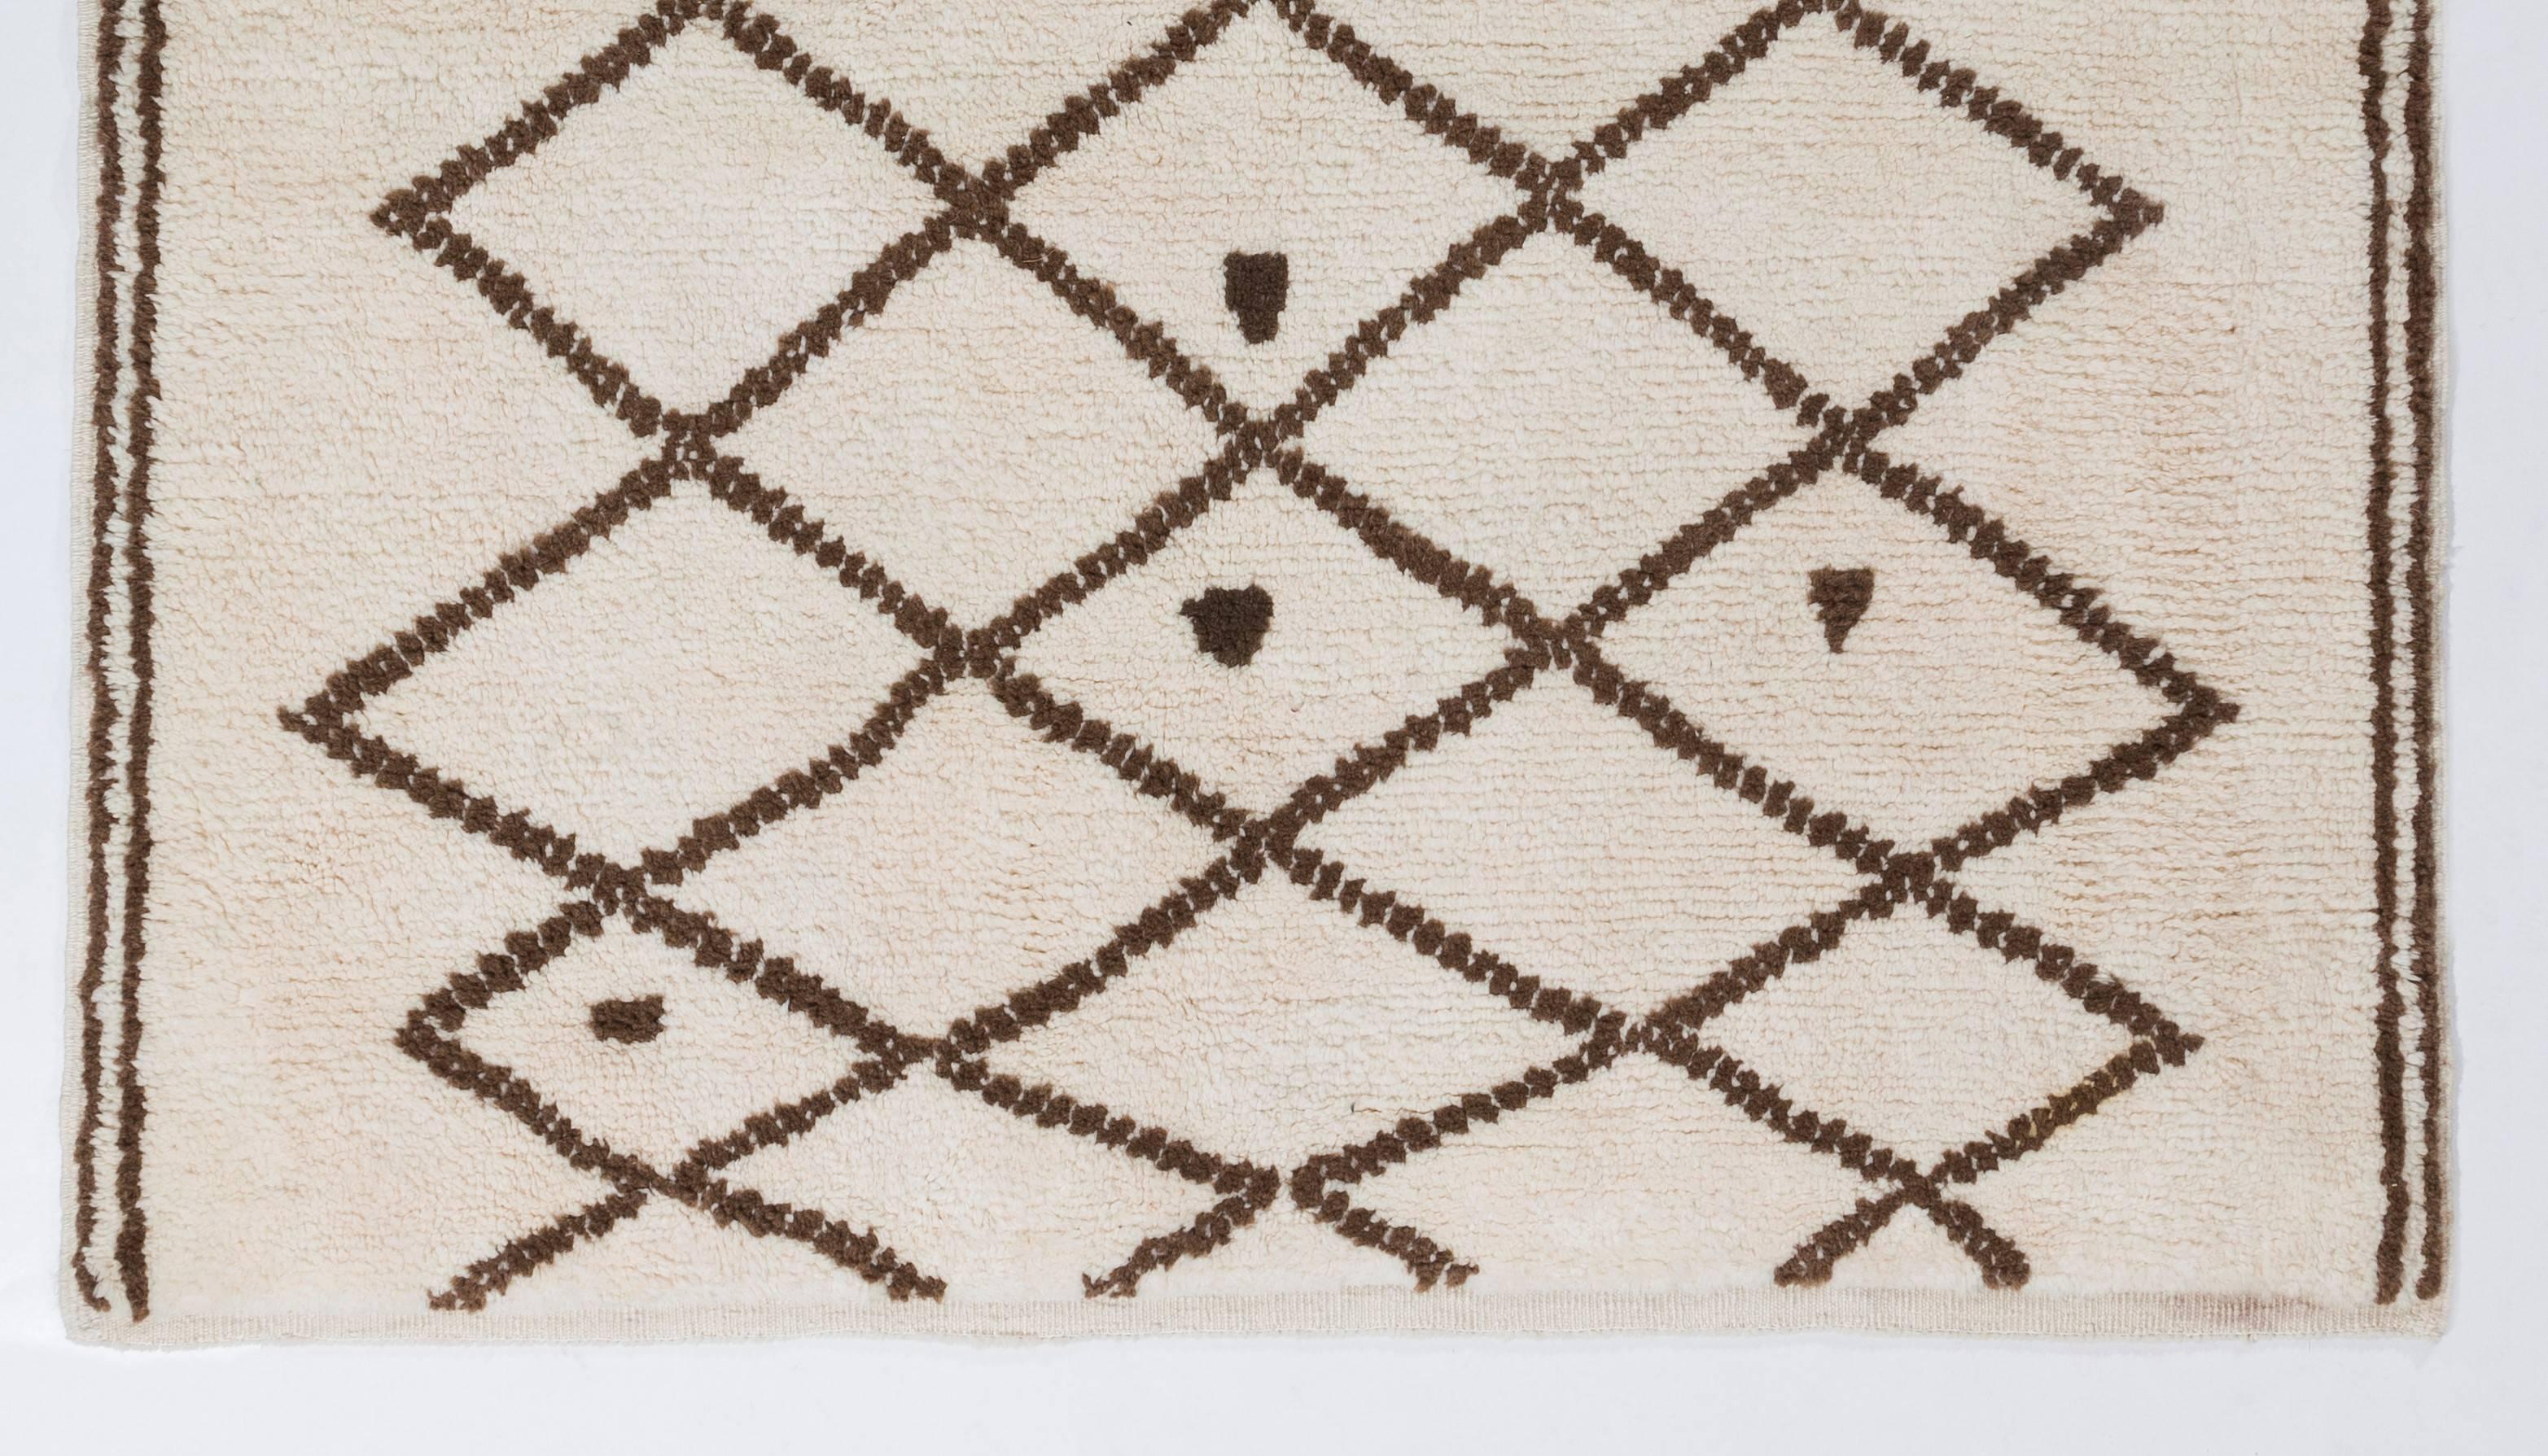 Ein moderner handgeknüpfter marokkanischer Teppich aus pflanzengefärbter Schafwolle. 
Weicher, komfortabler Flor, ideal für Familien mit Kindern.
 Erhältlich so wie er ist oder nach Maß in jeder gewünschten Größe und Farbkombination.